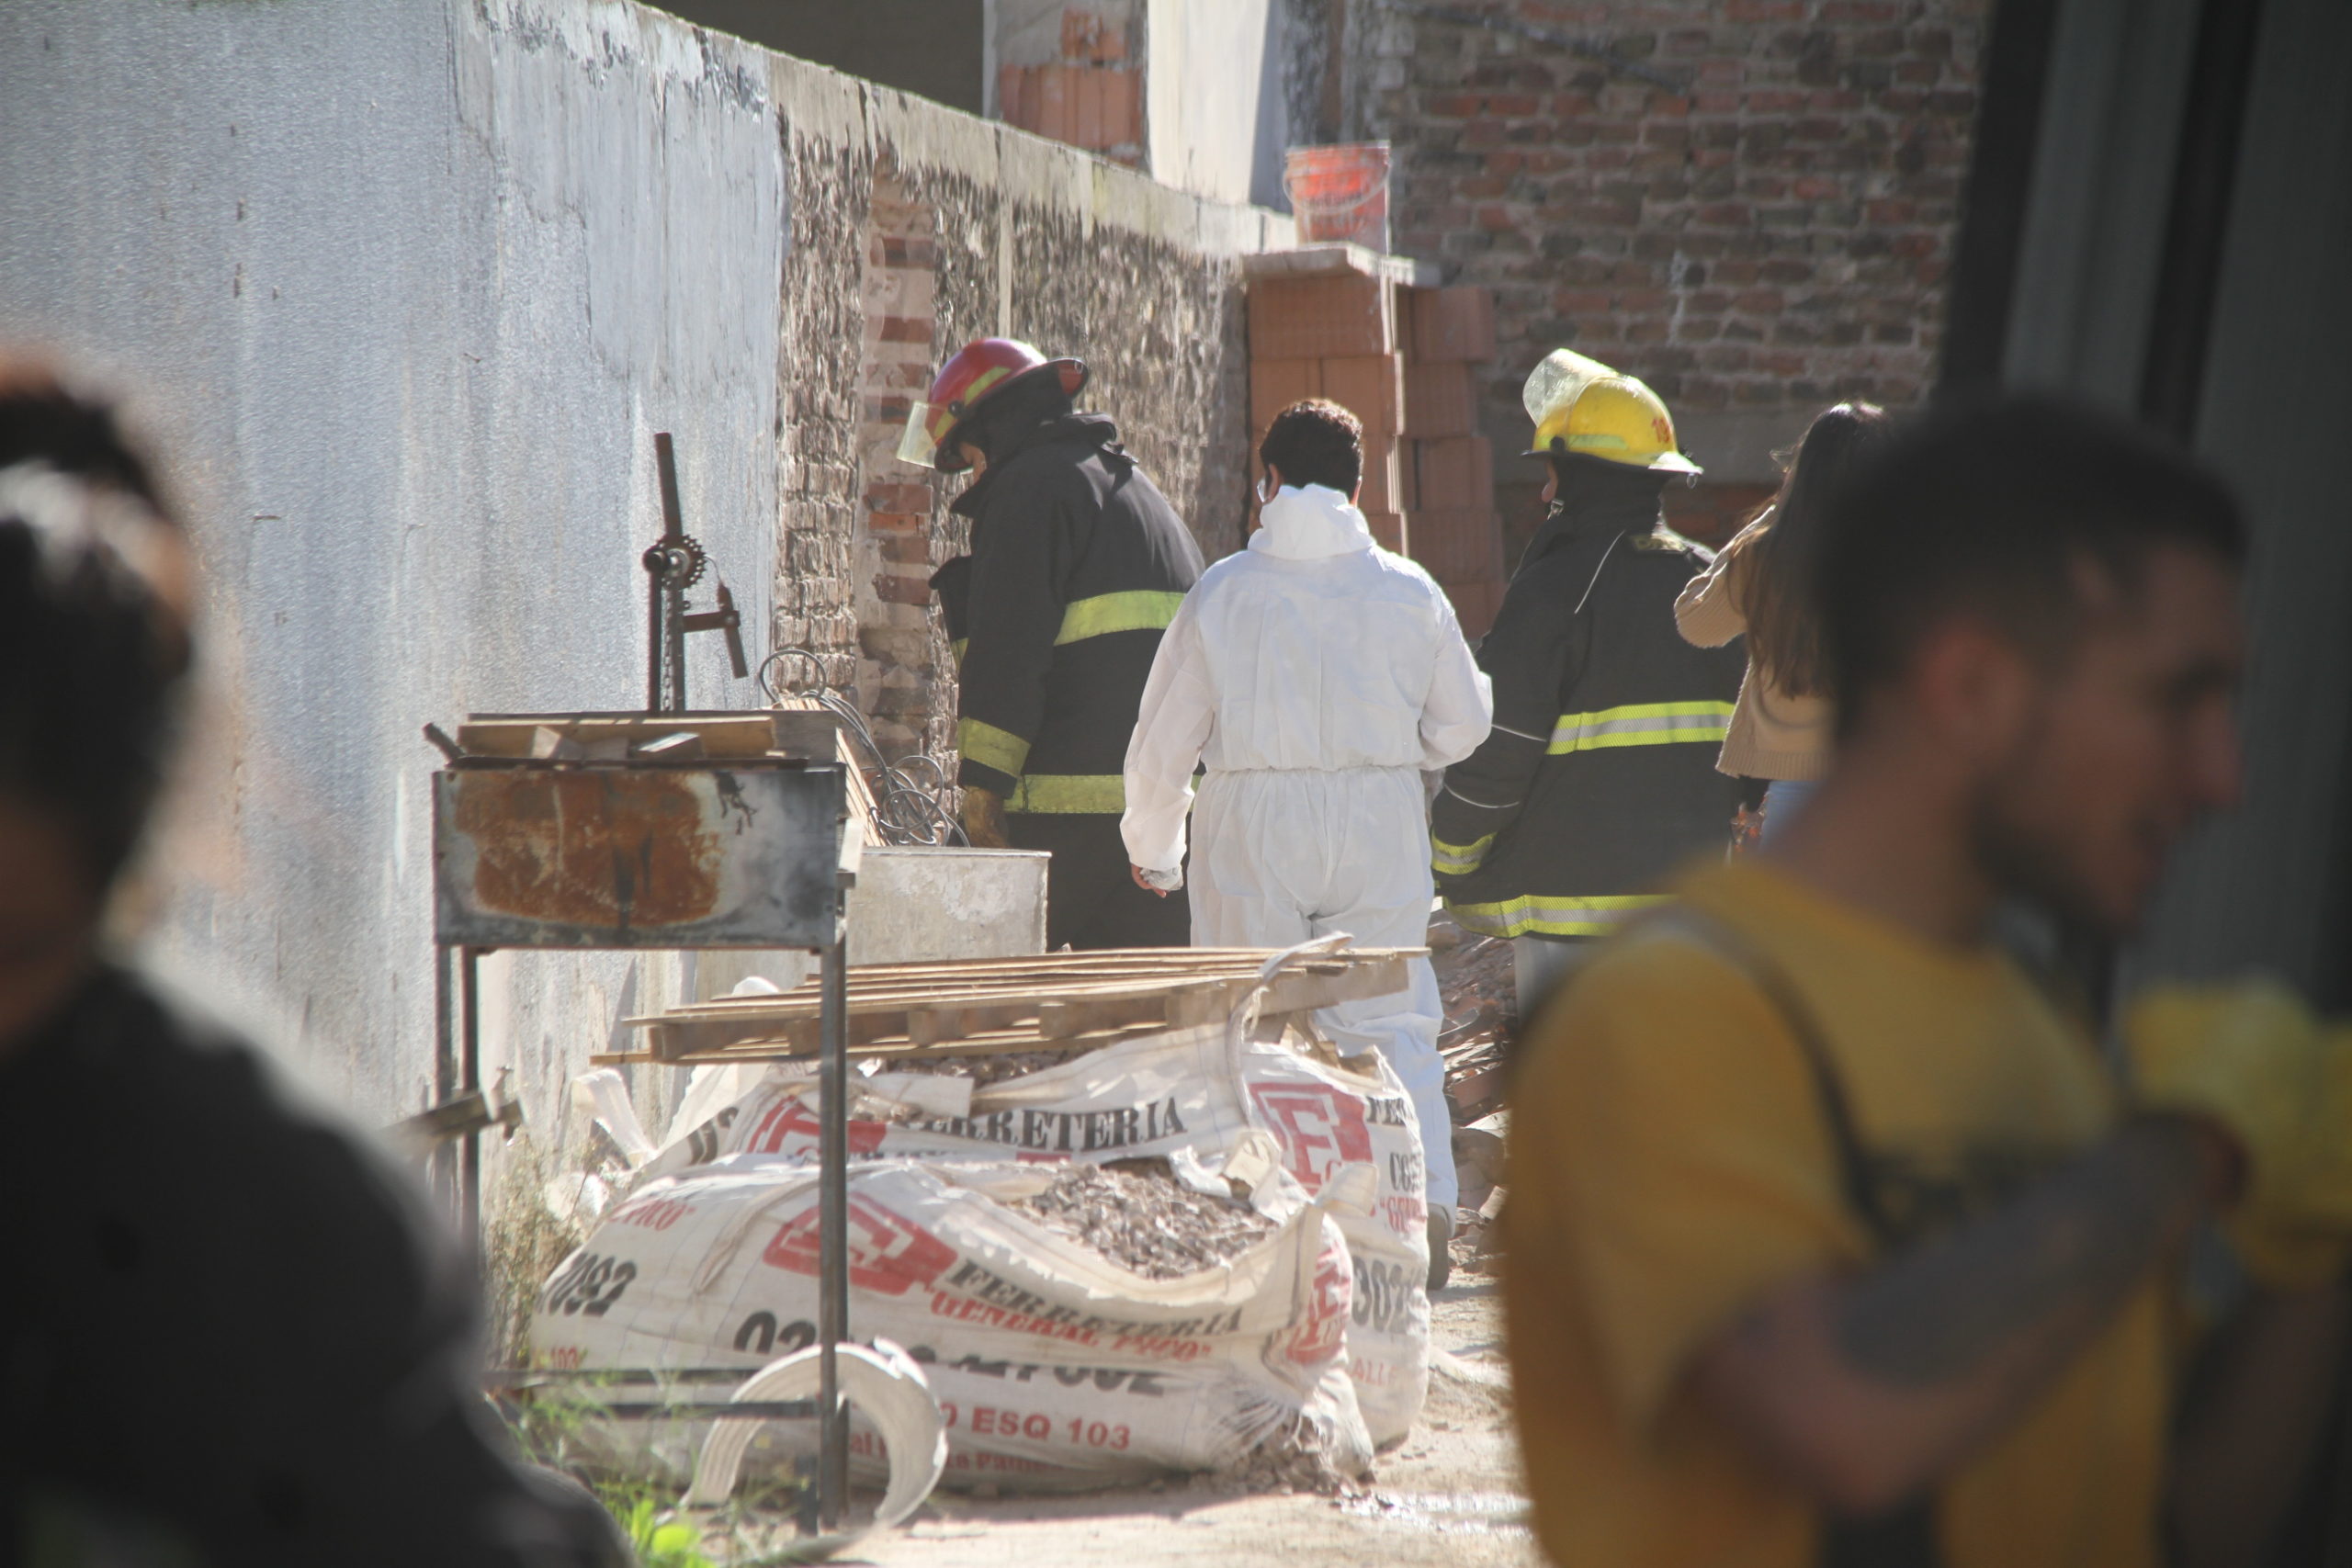 El trabajador que sufrió quemaduras tras una explosión se encuentra en terapia con “pronóstico reservado”